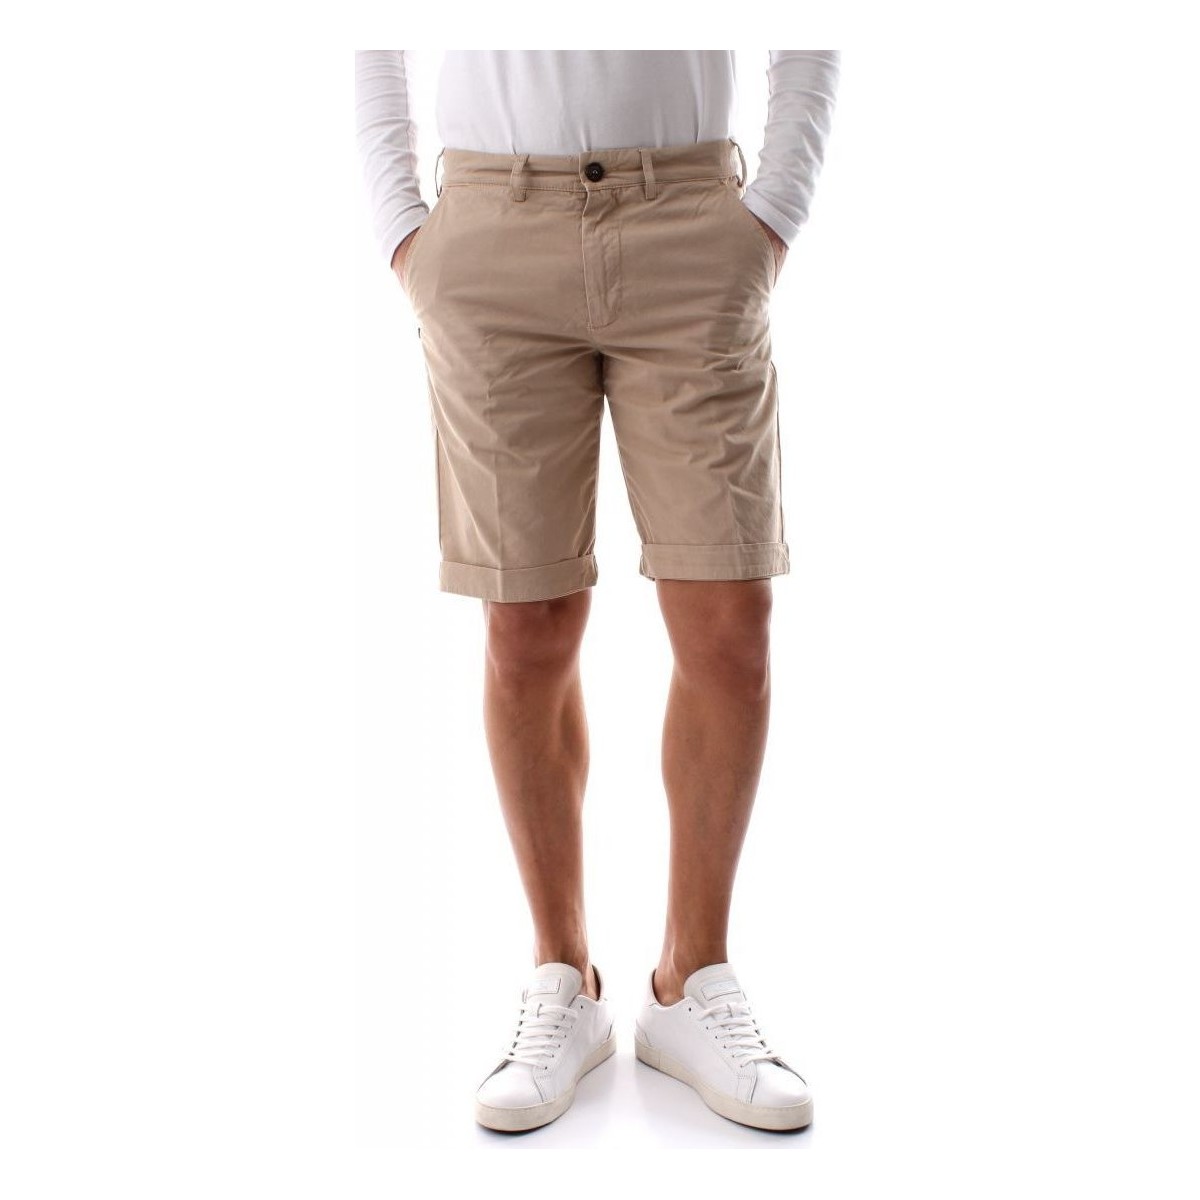 Vêtements Homme Shorts / Bermudas 40weft SERGENTBE 1683 7031-W2103 BEIGE OXFORD Beige